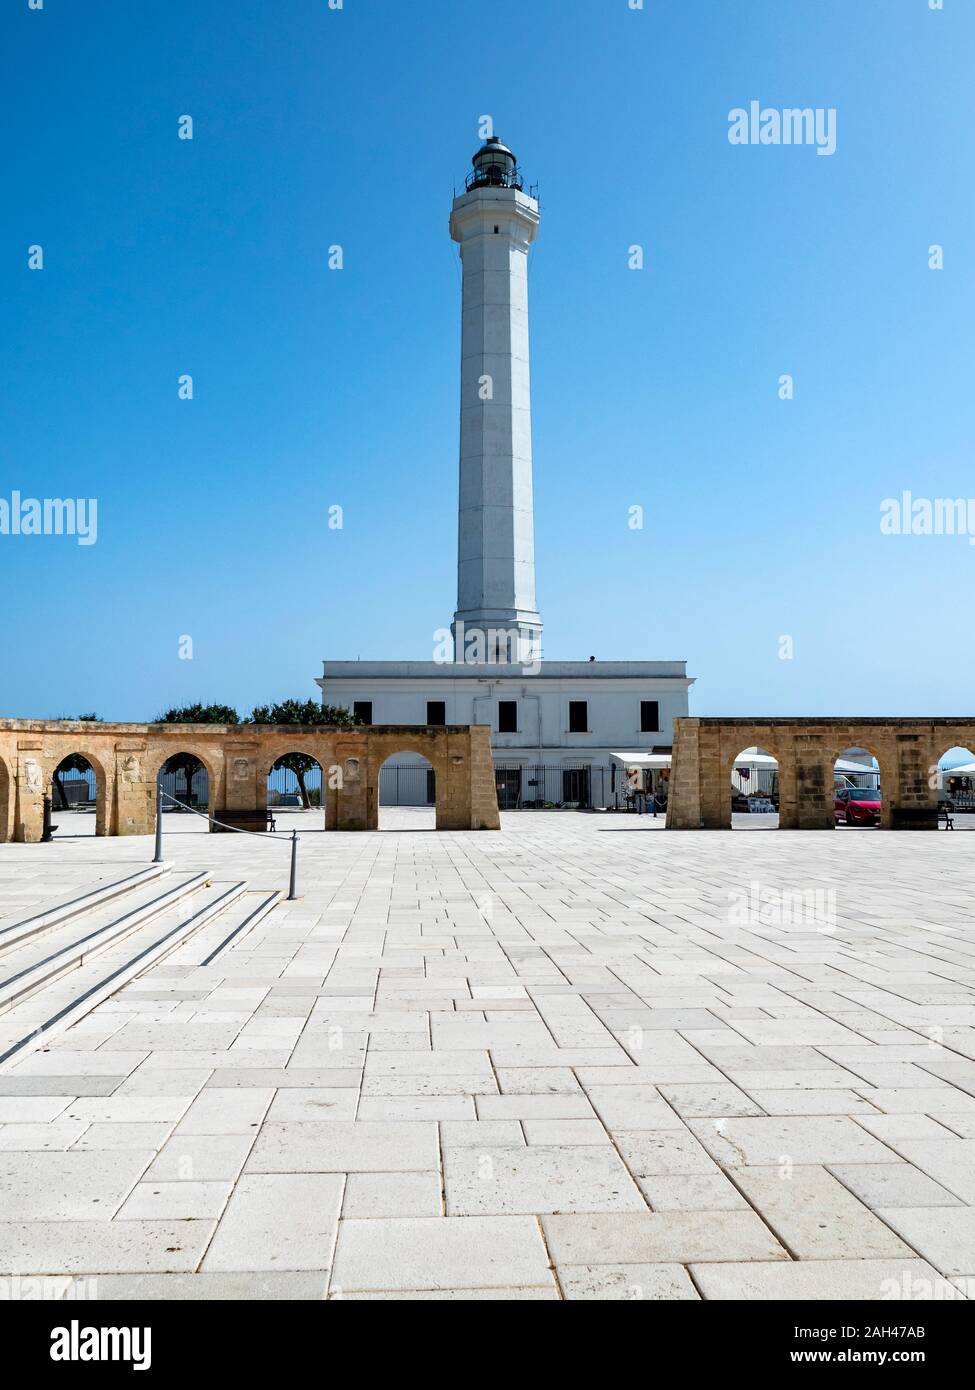 Italia, in provincia di Lecce e Santa Maria di Leuca, alto faro bianco in piedi contro il cielo chiaro Foto Stock